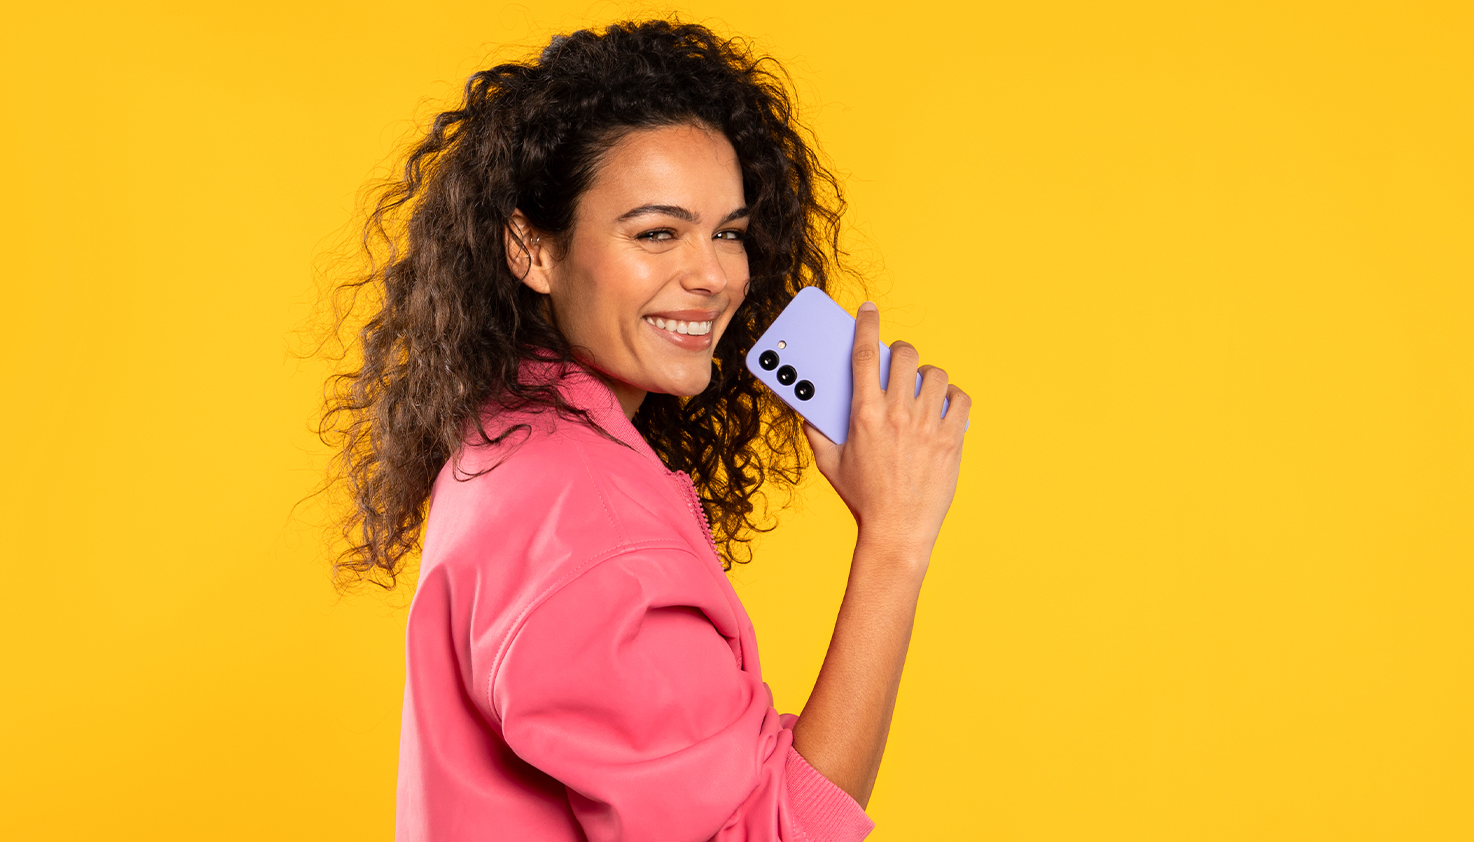 Une femme souriante tient une coque de téléphone violette, l'arrière-plan est jaune.